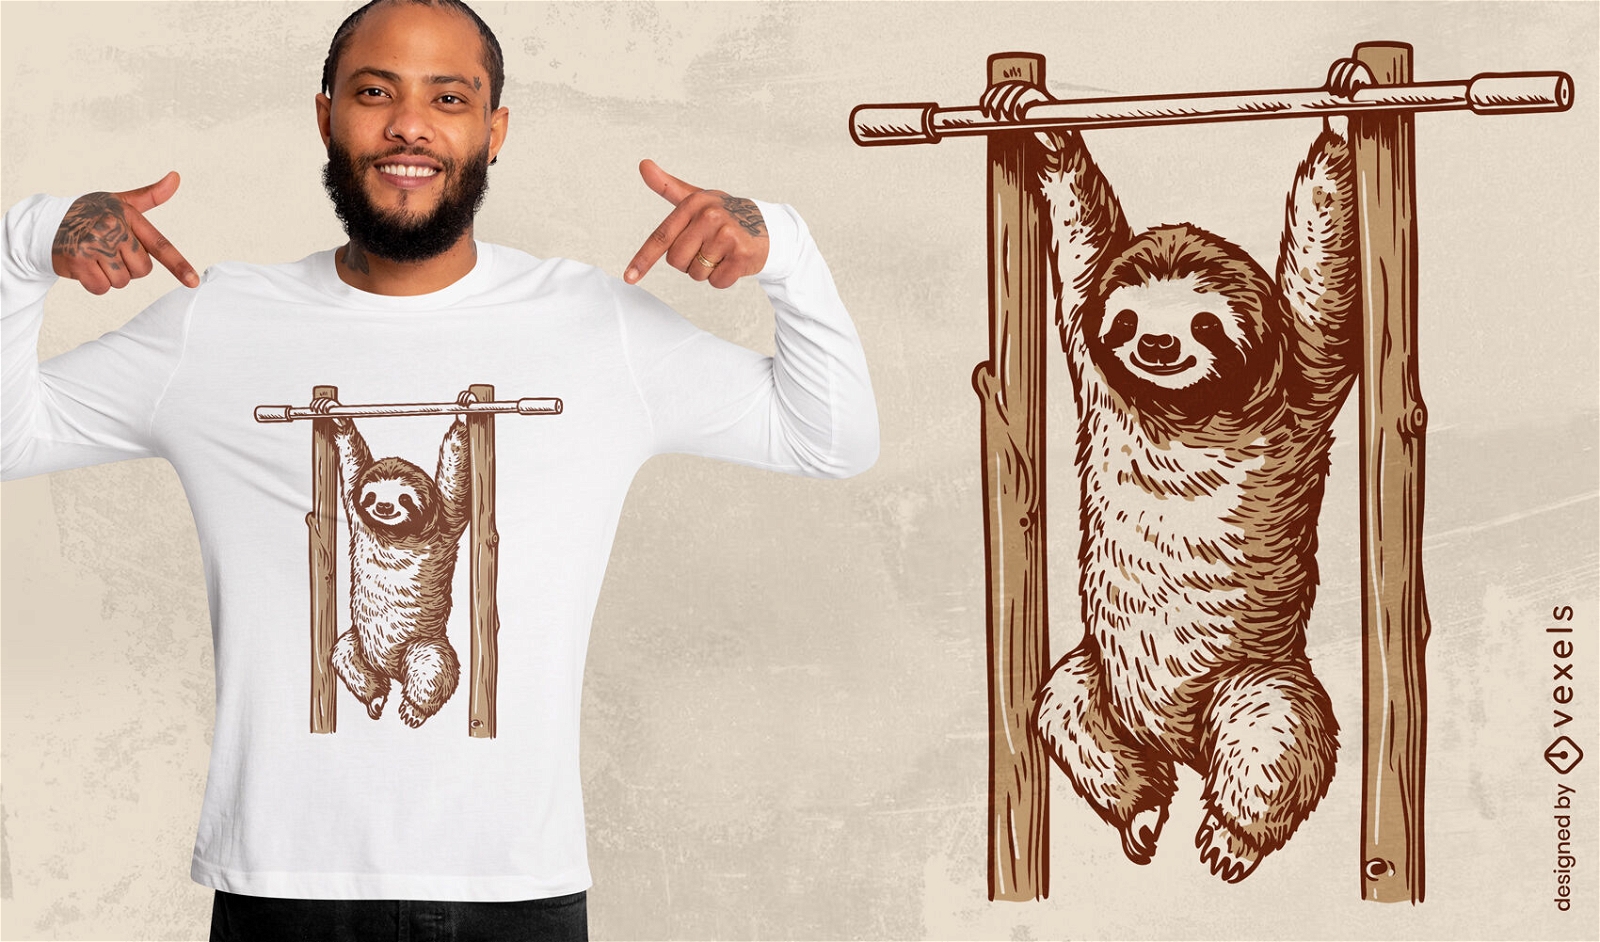 Dise?o de camiseta Sloth haciendo dominadas.